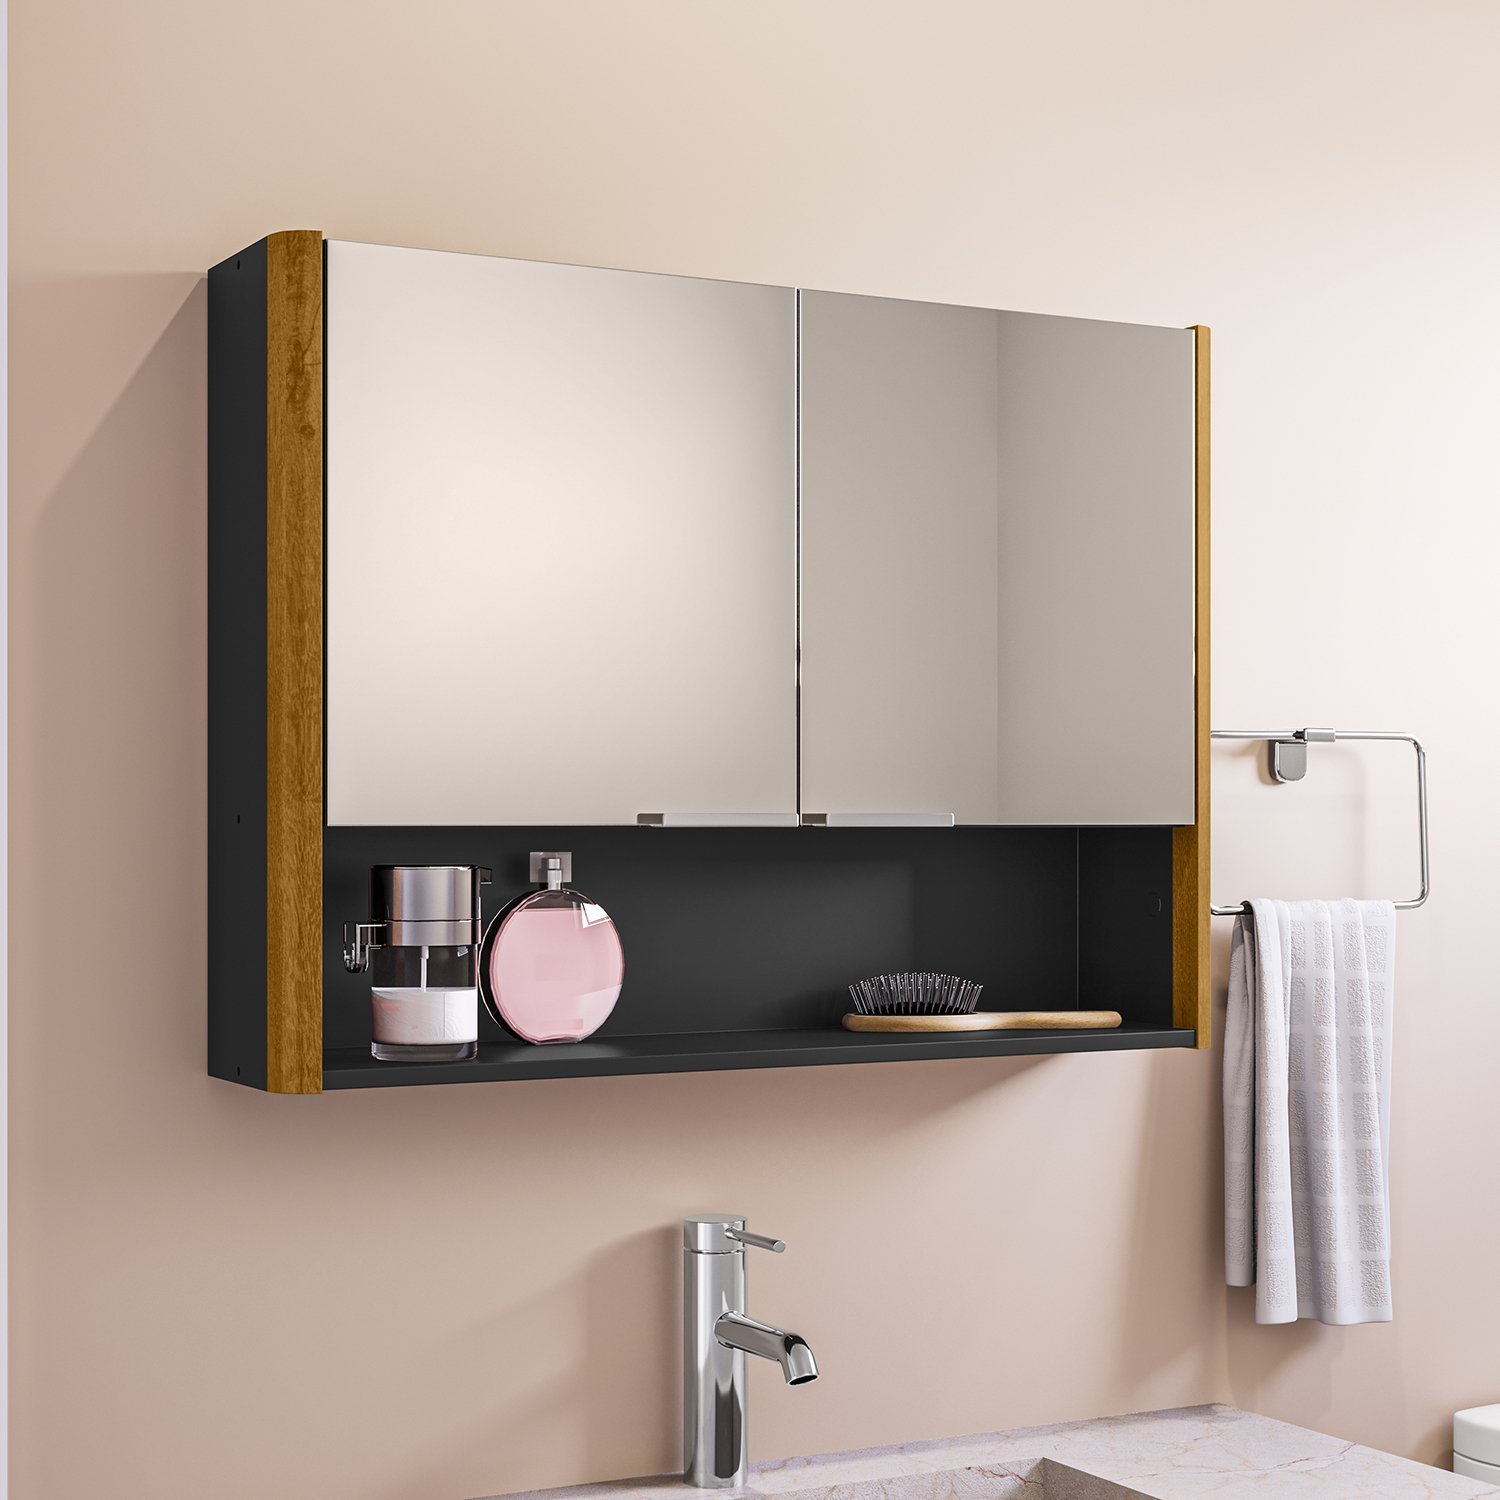 Espelheira para Banheiro Santorini Cantos Curvos 72cm - 1